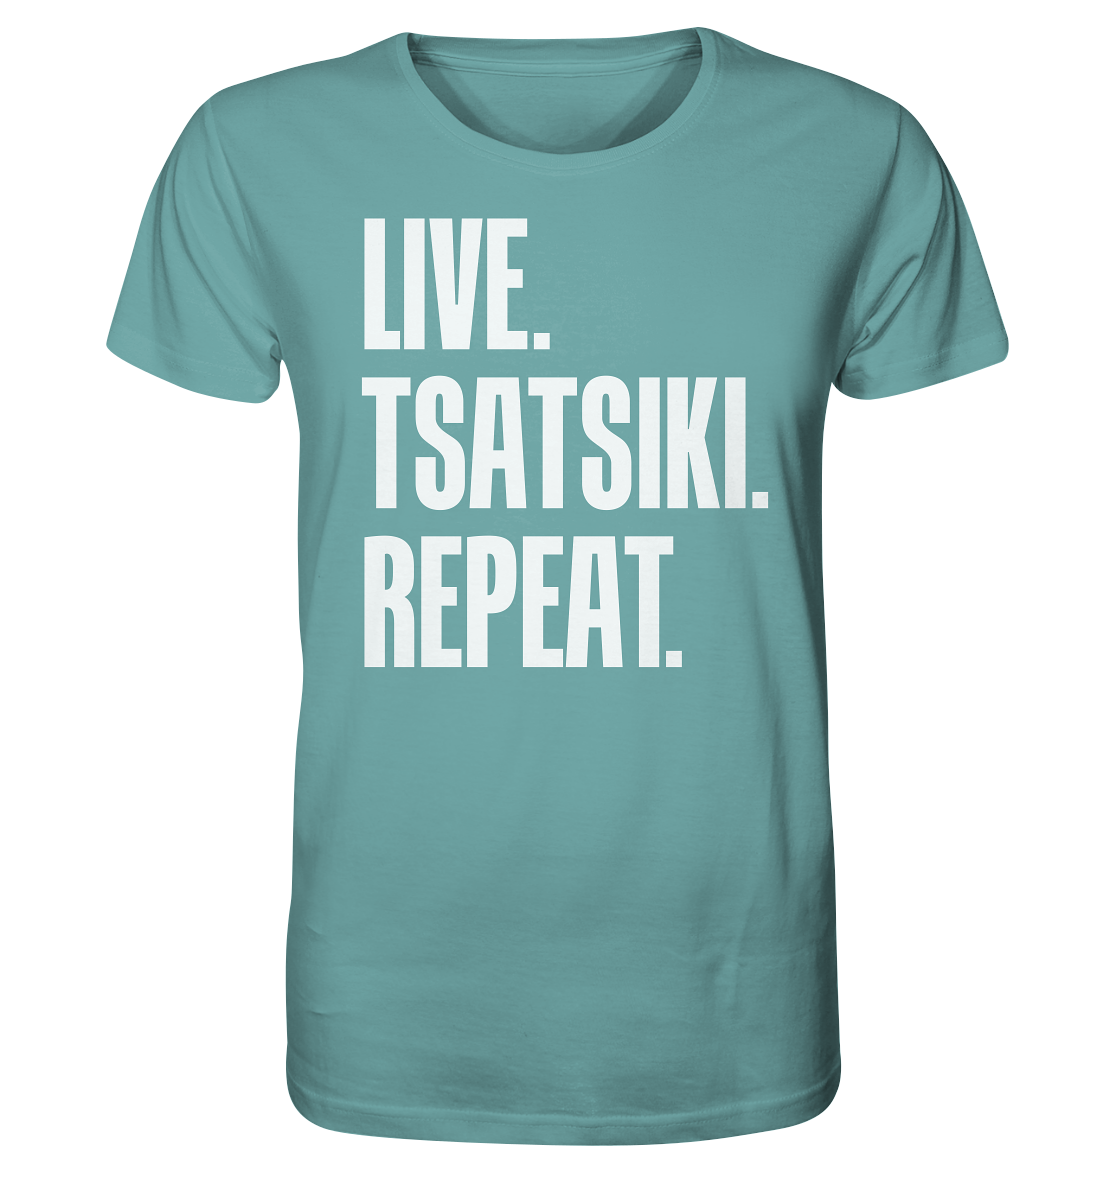 LIVE. TSATSIKI. REPEAT. - Organic Shirt